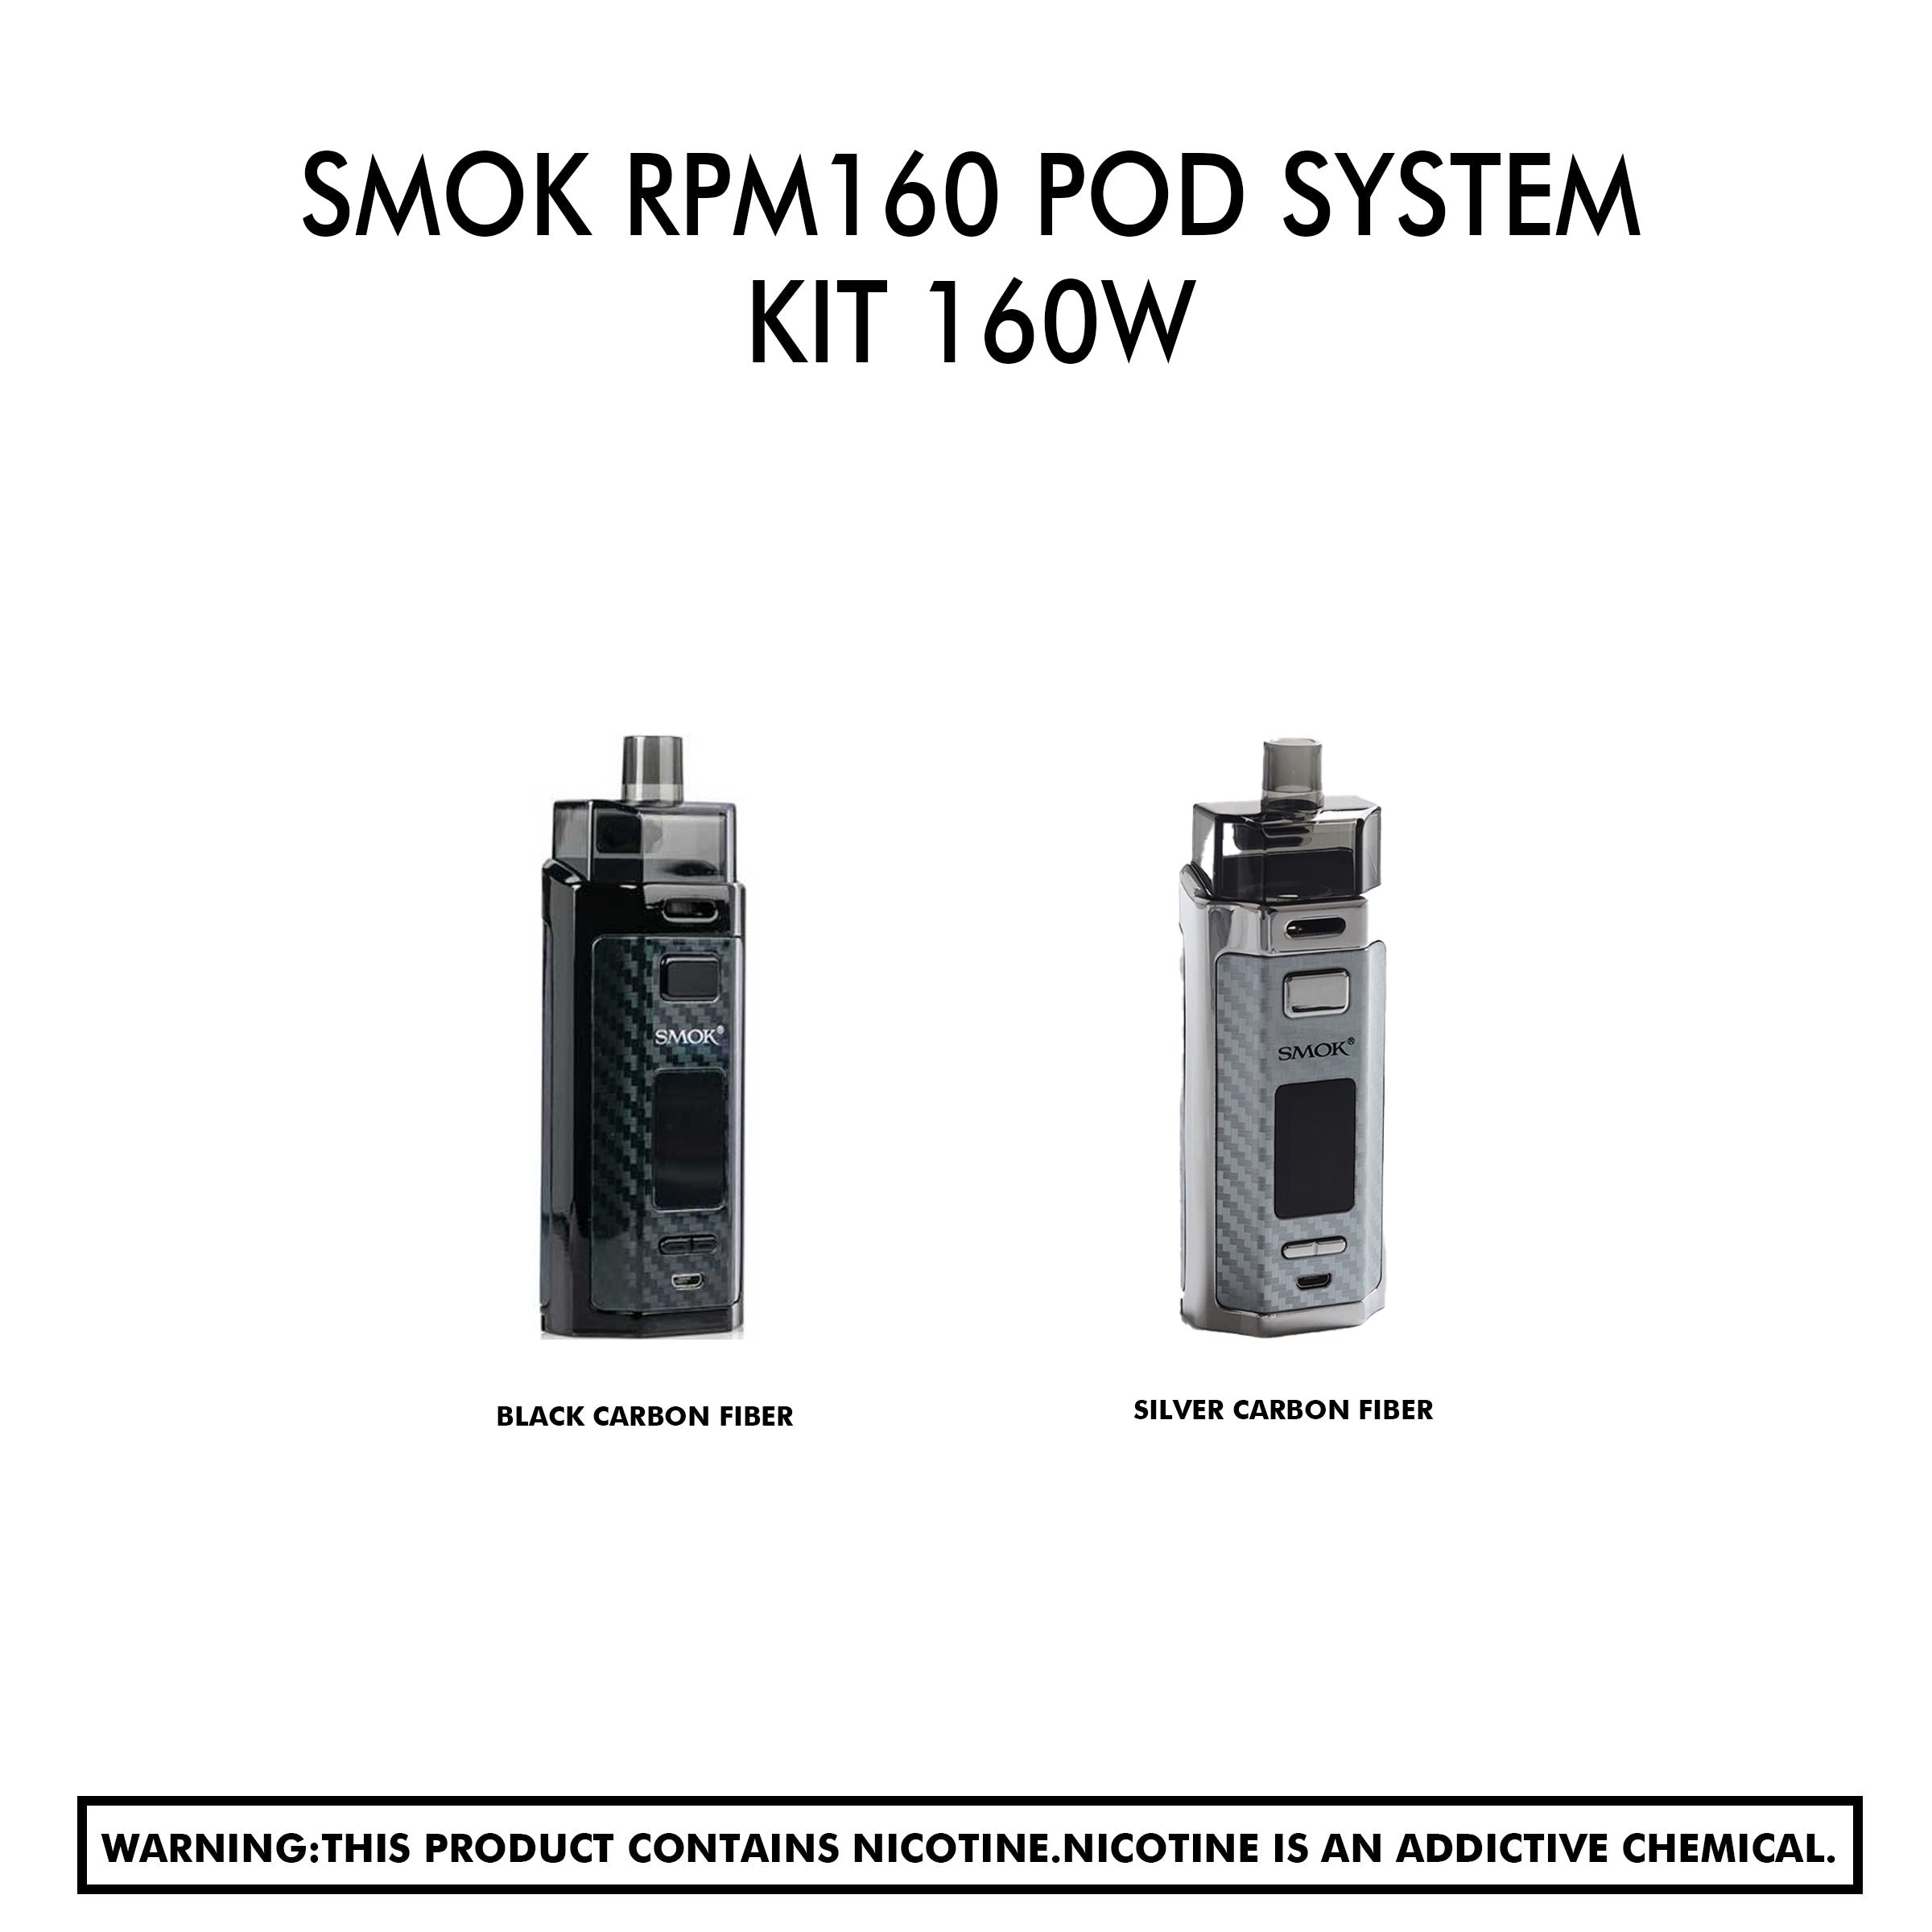 Smok Rpm160 Pod System Kit 160W